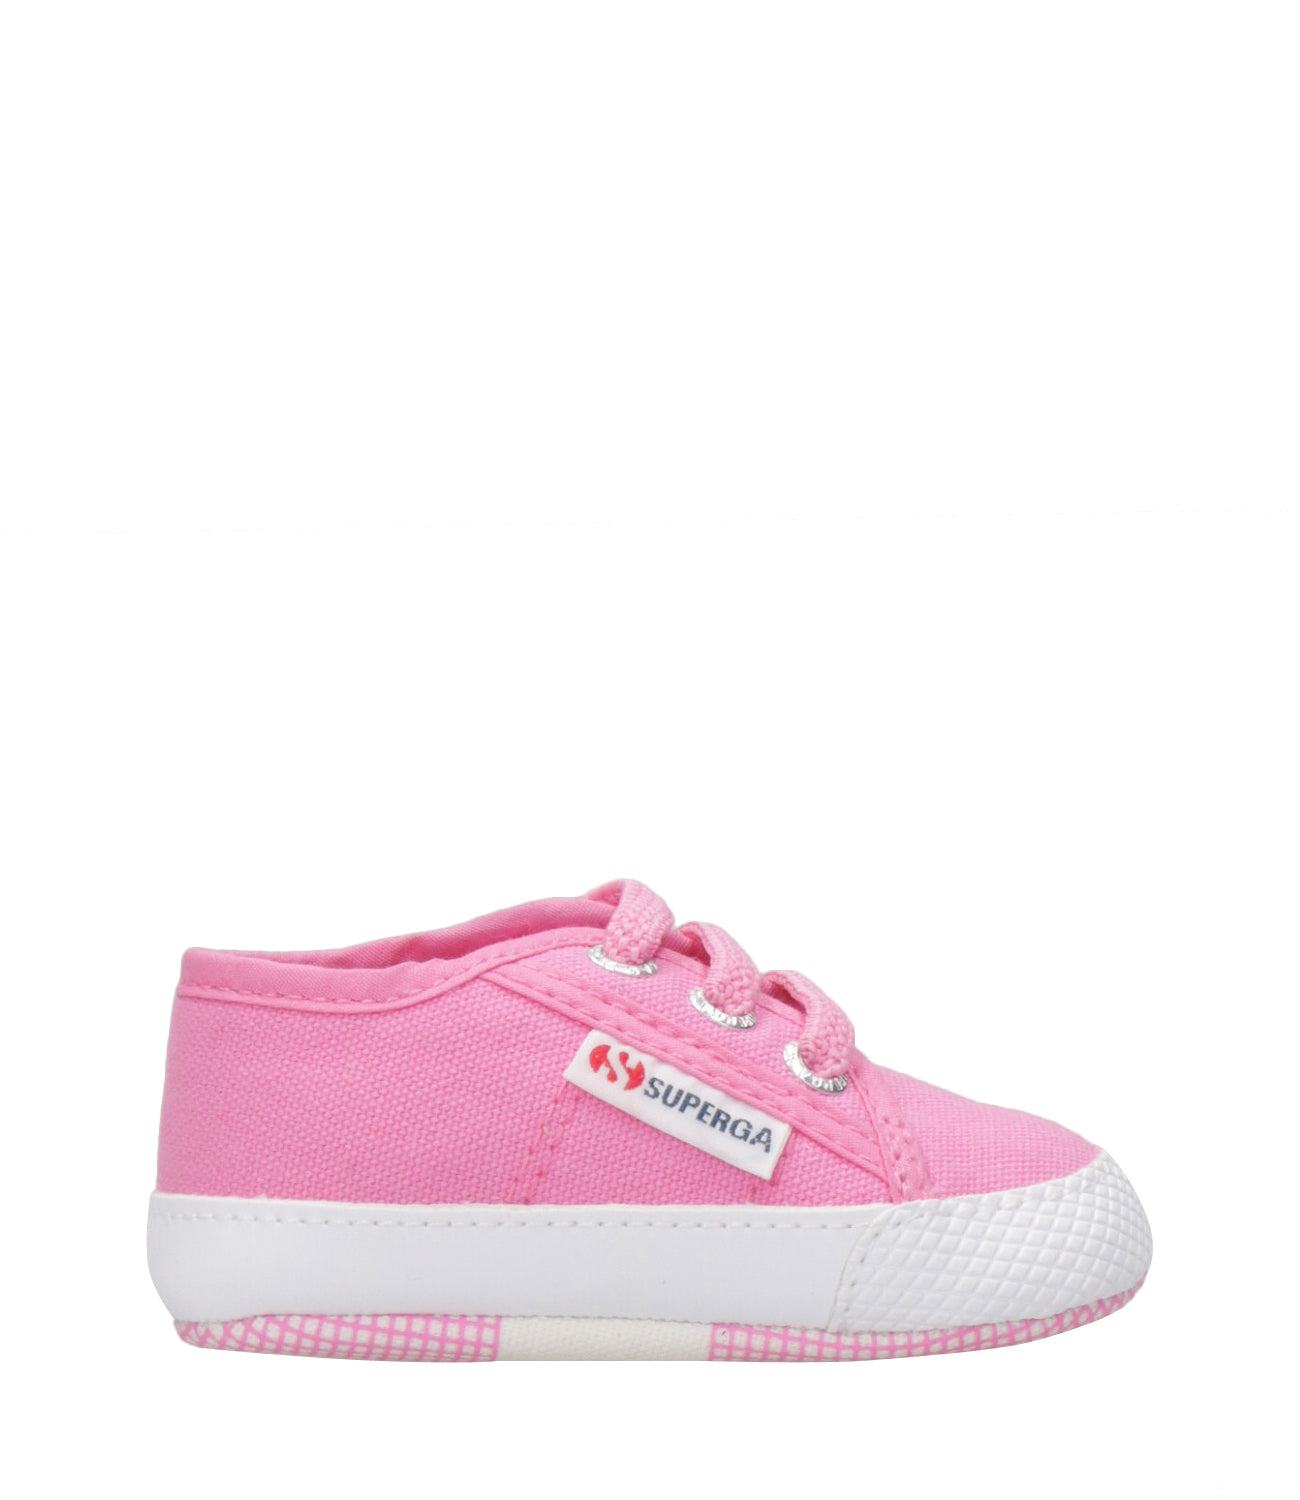 Superga Kids | Sneakers 4006 Baby Fuxia